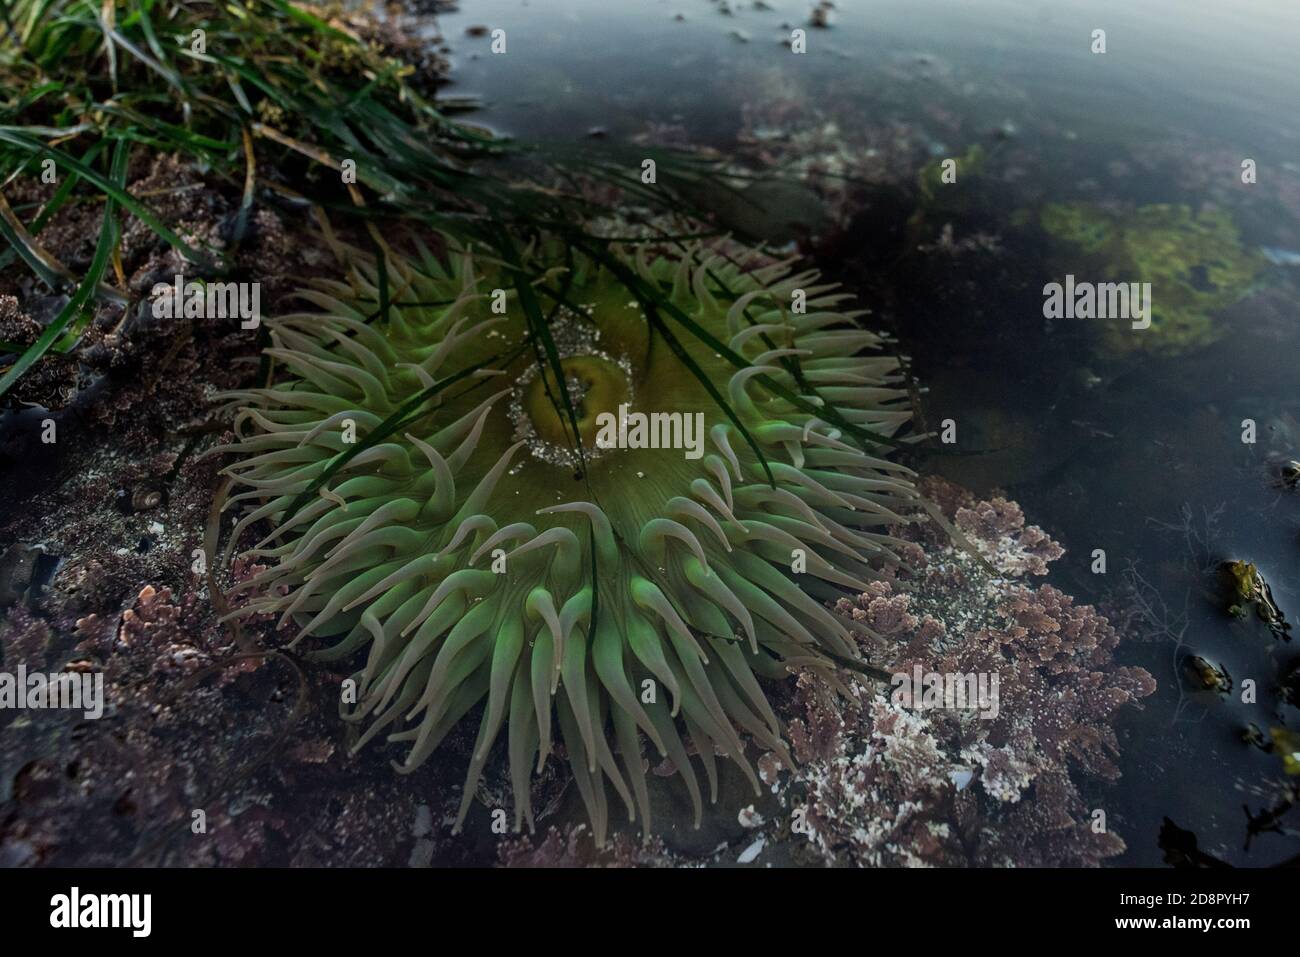 L'anémone vert géant (Anthopleura xanthogrammica) de l'océan Pacifique, celui-ci est de la colonne tidepools point en Californie. Banque D'Images